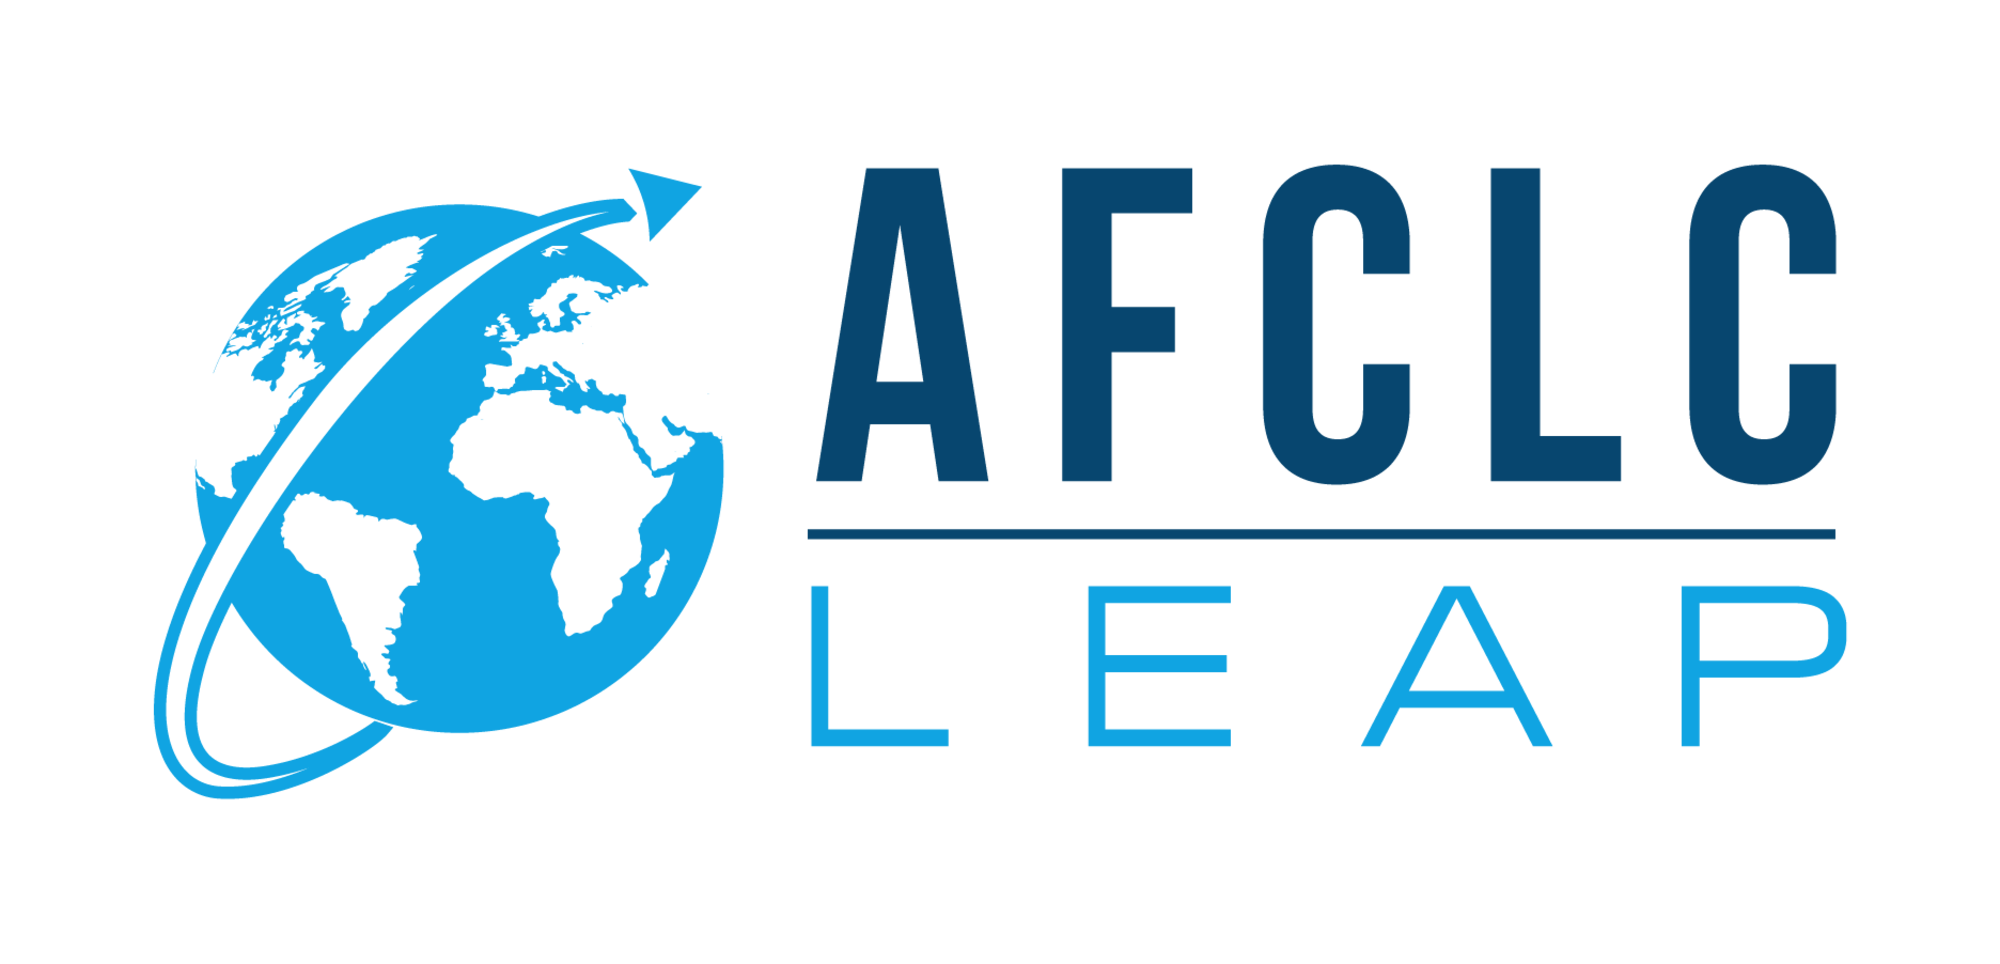 AFCLC LEAP